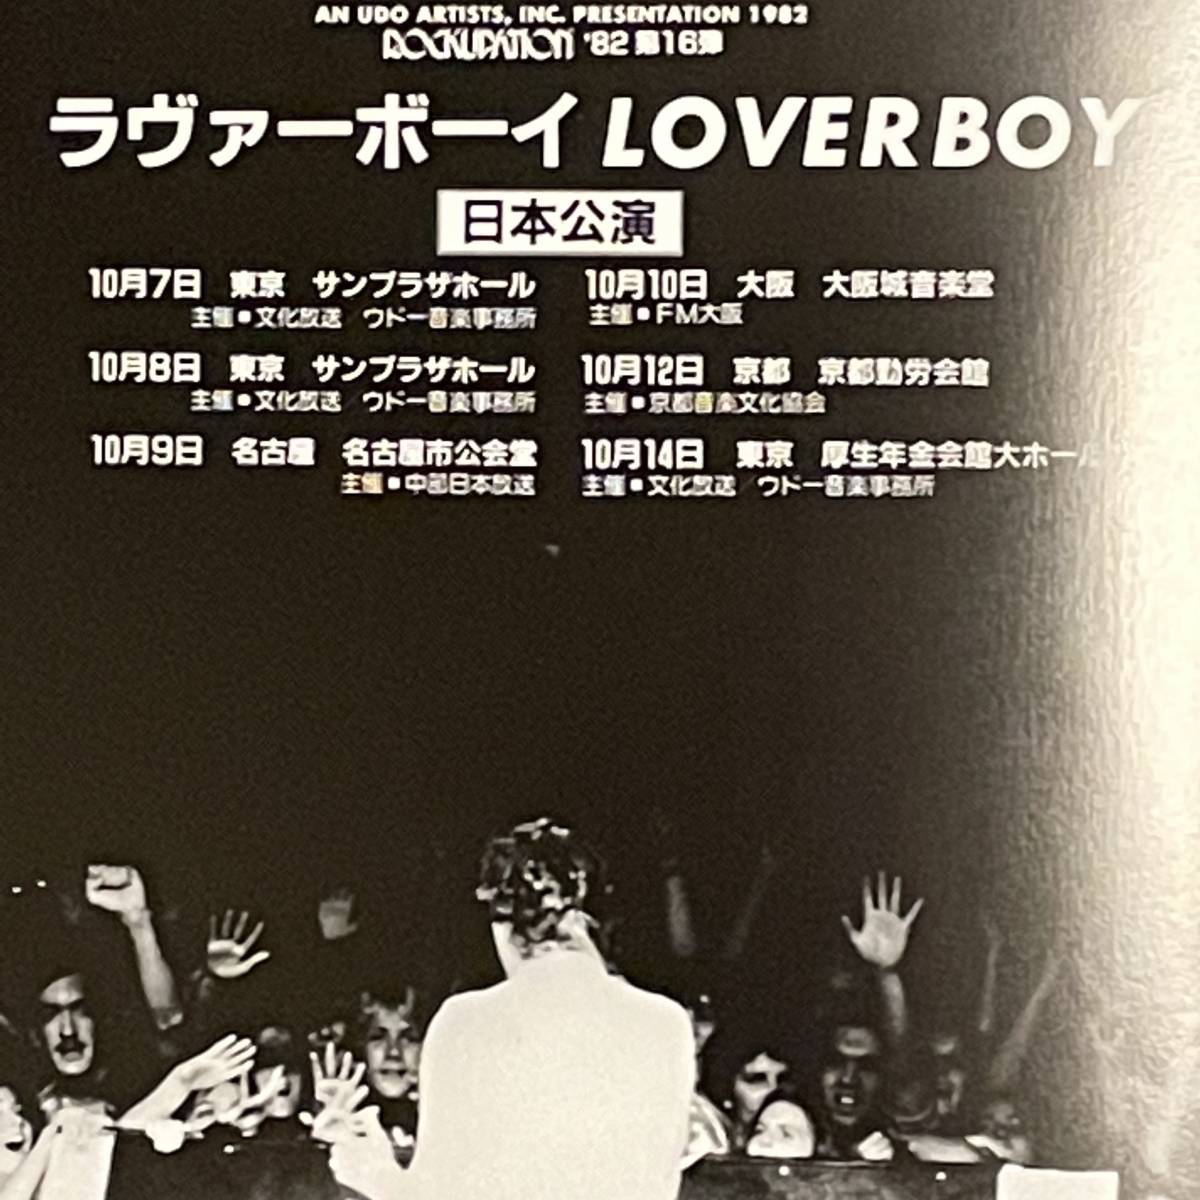 LOVERBOY ラヴァーボーイ 1982年日本公演パンフレット_画像3